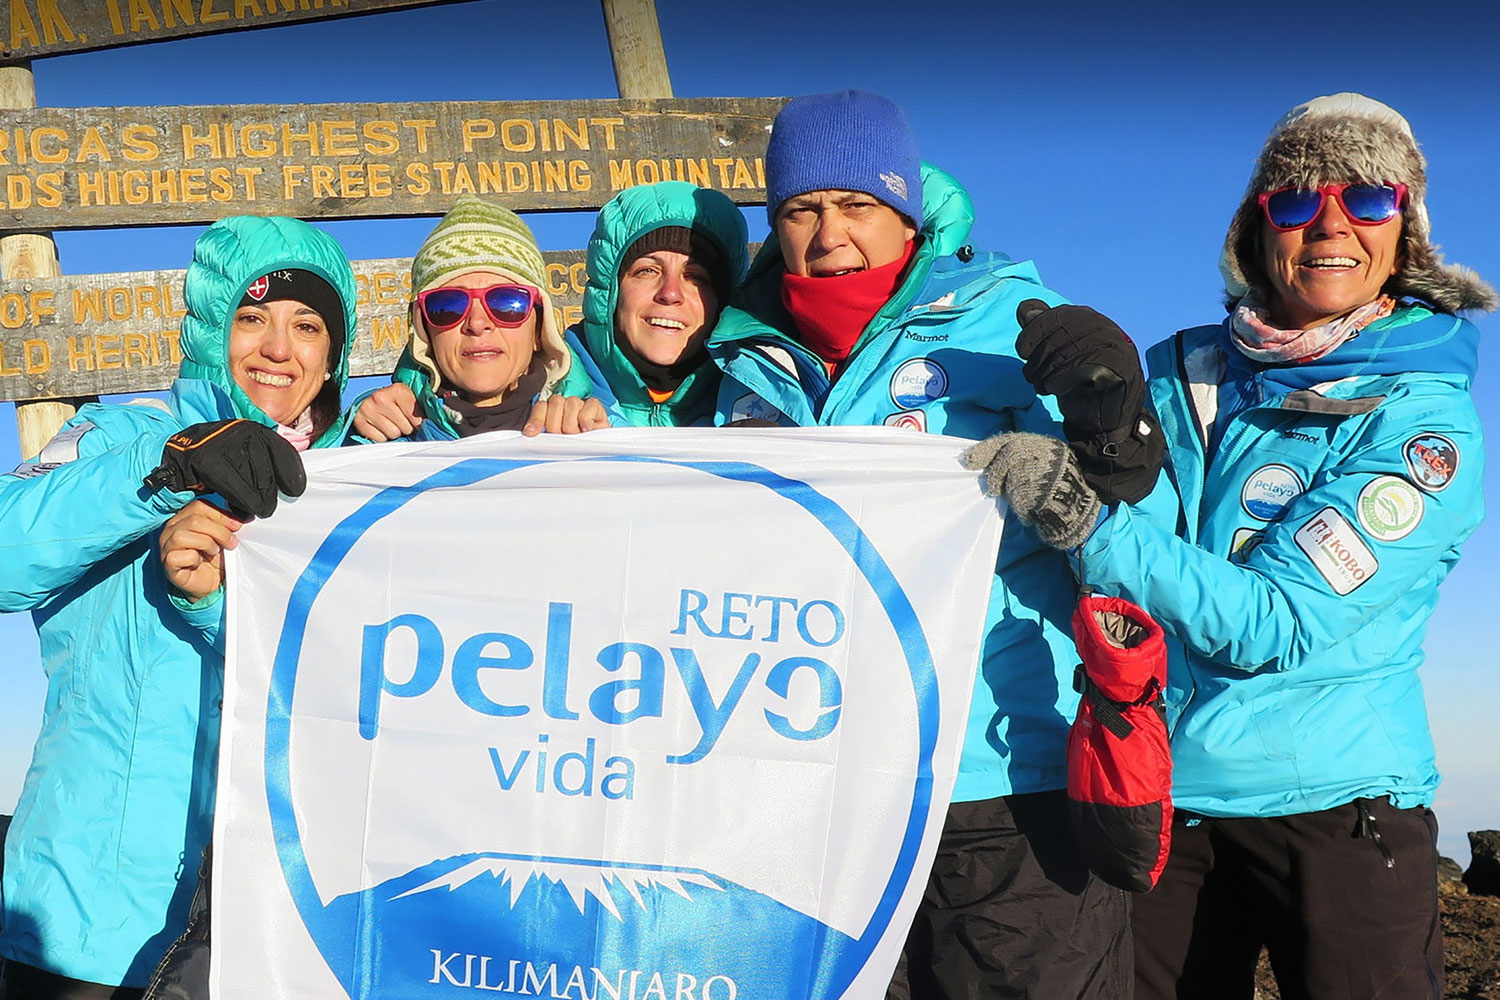 Reto Pelayo Vida Kilimanjaro 2015